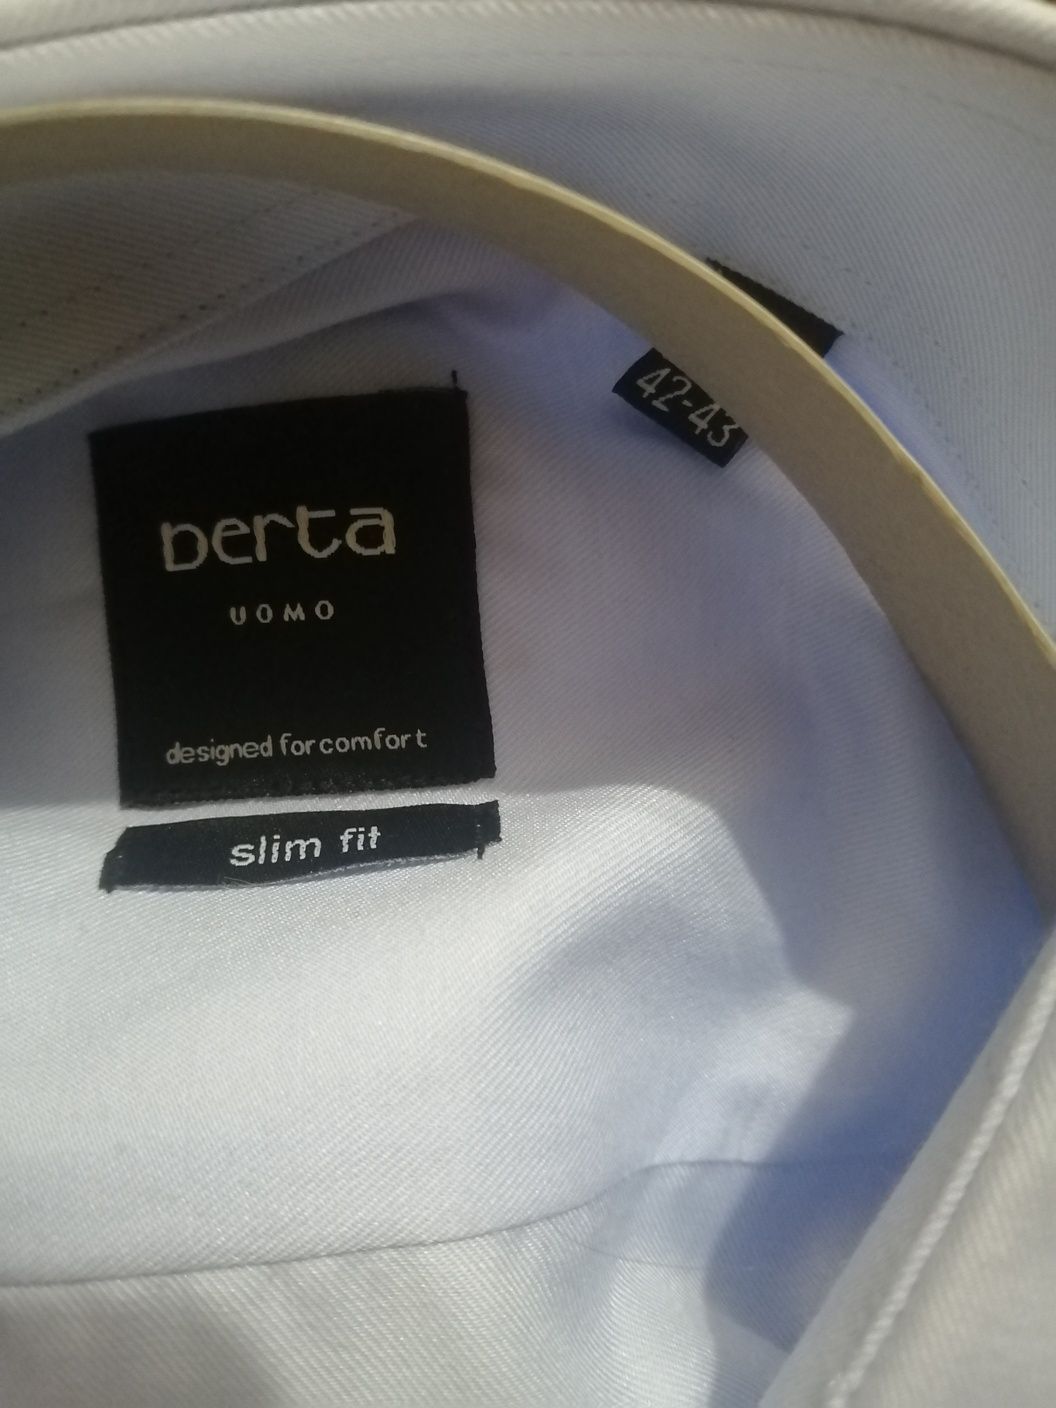 Новый мужской рубашка, фирма berta